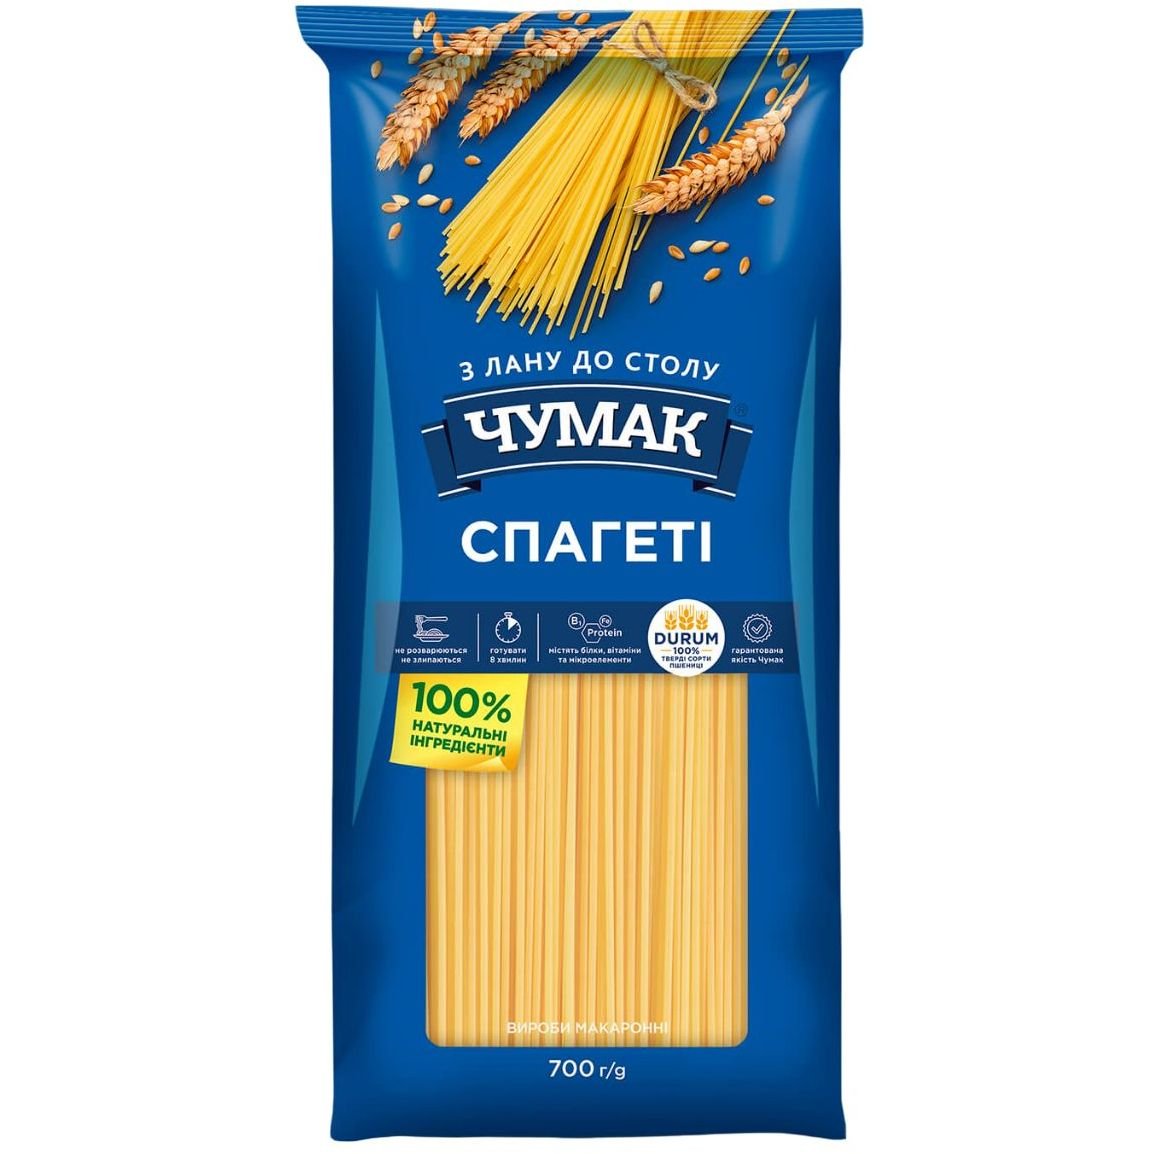 Изделия макаронные Чумак Спагетти, 700 г (695186) - фото 1